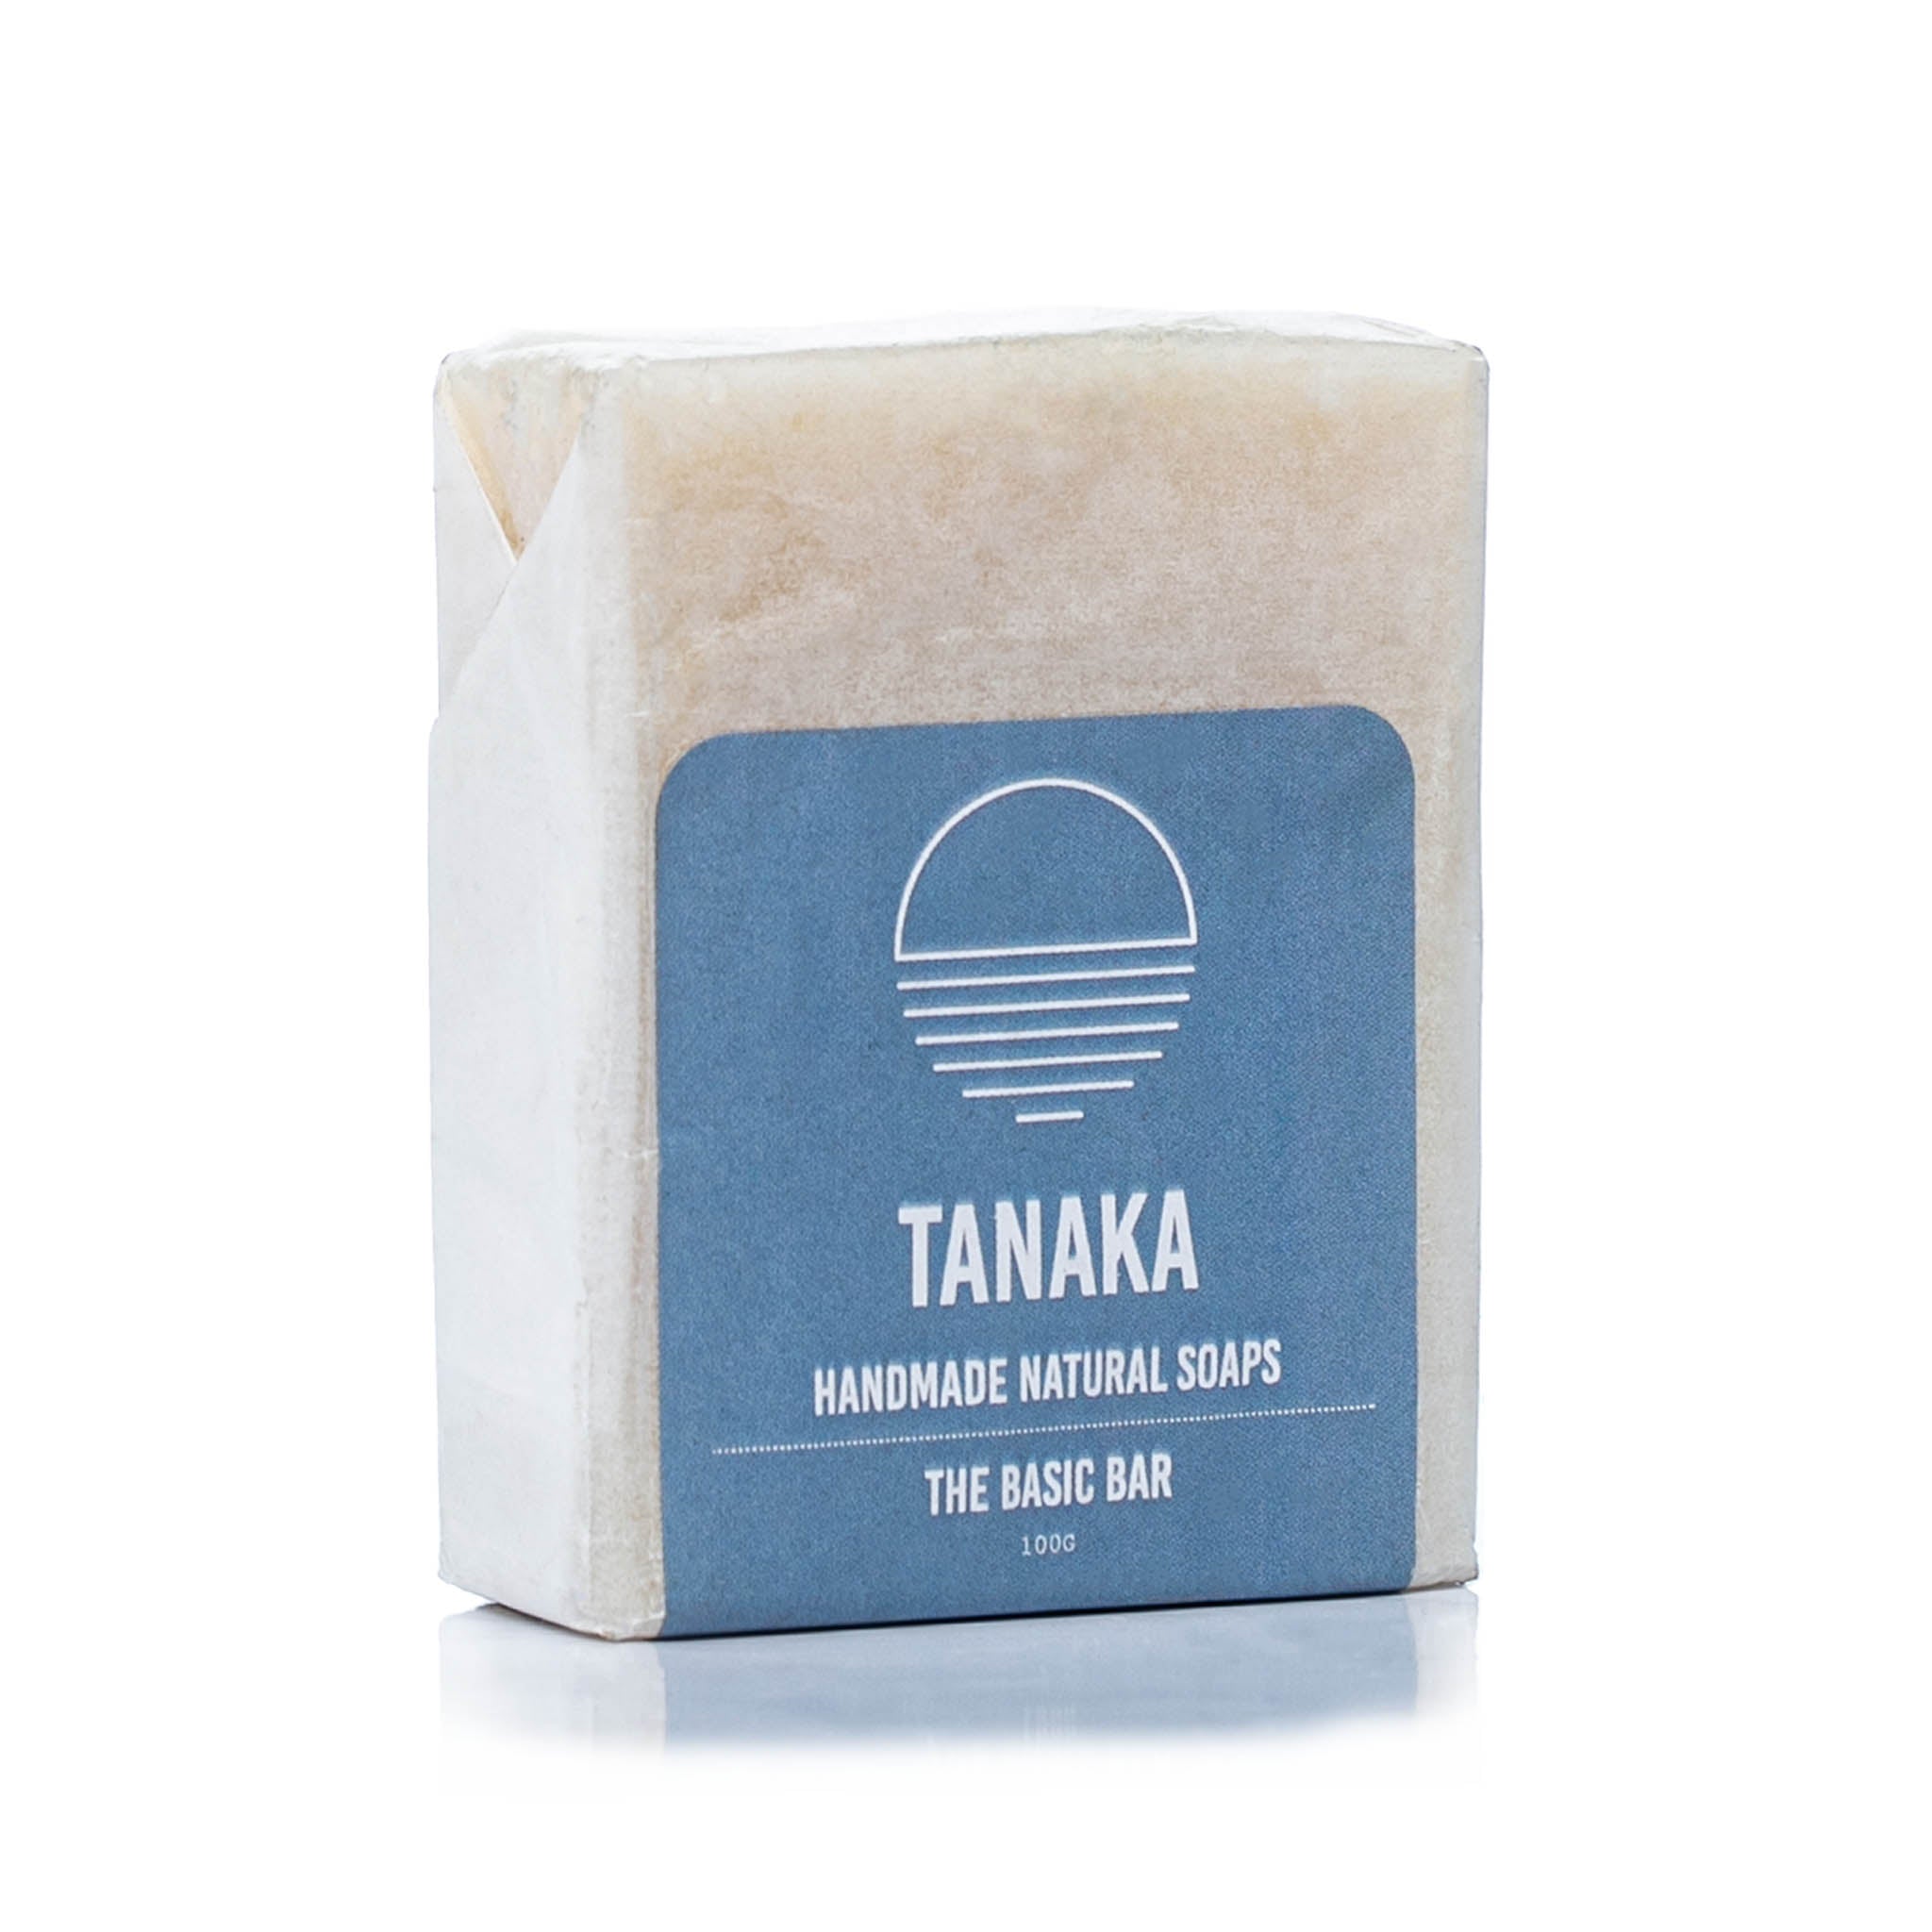 Tanaka Basic bar soap at Bracketts Beauty